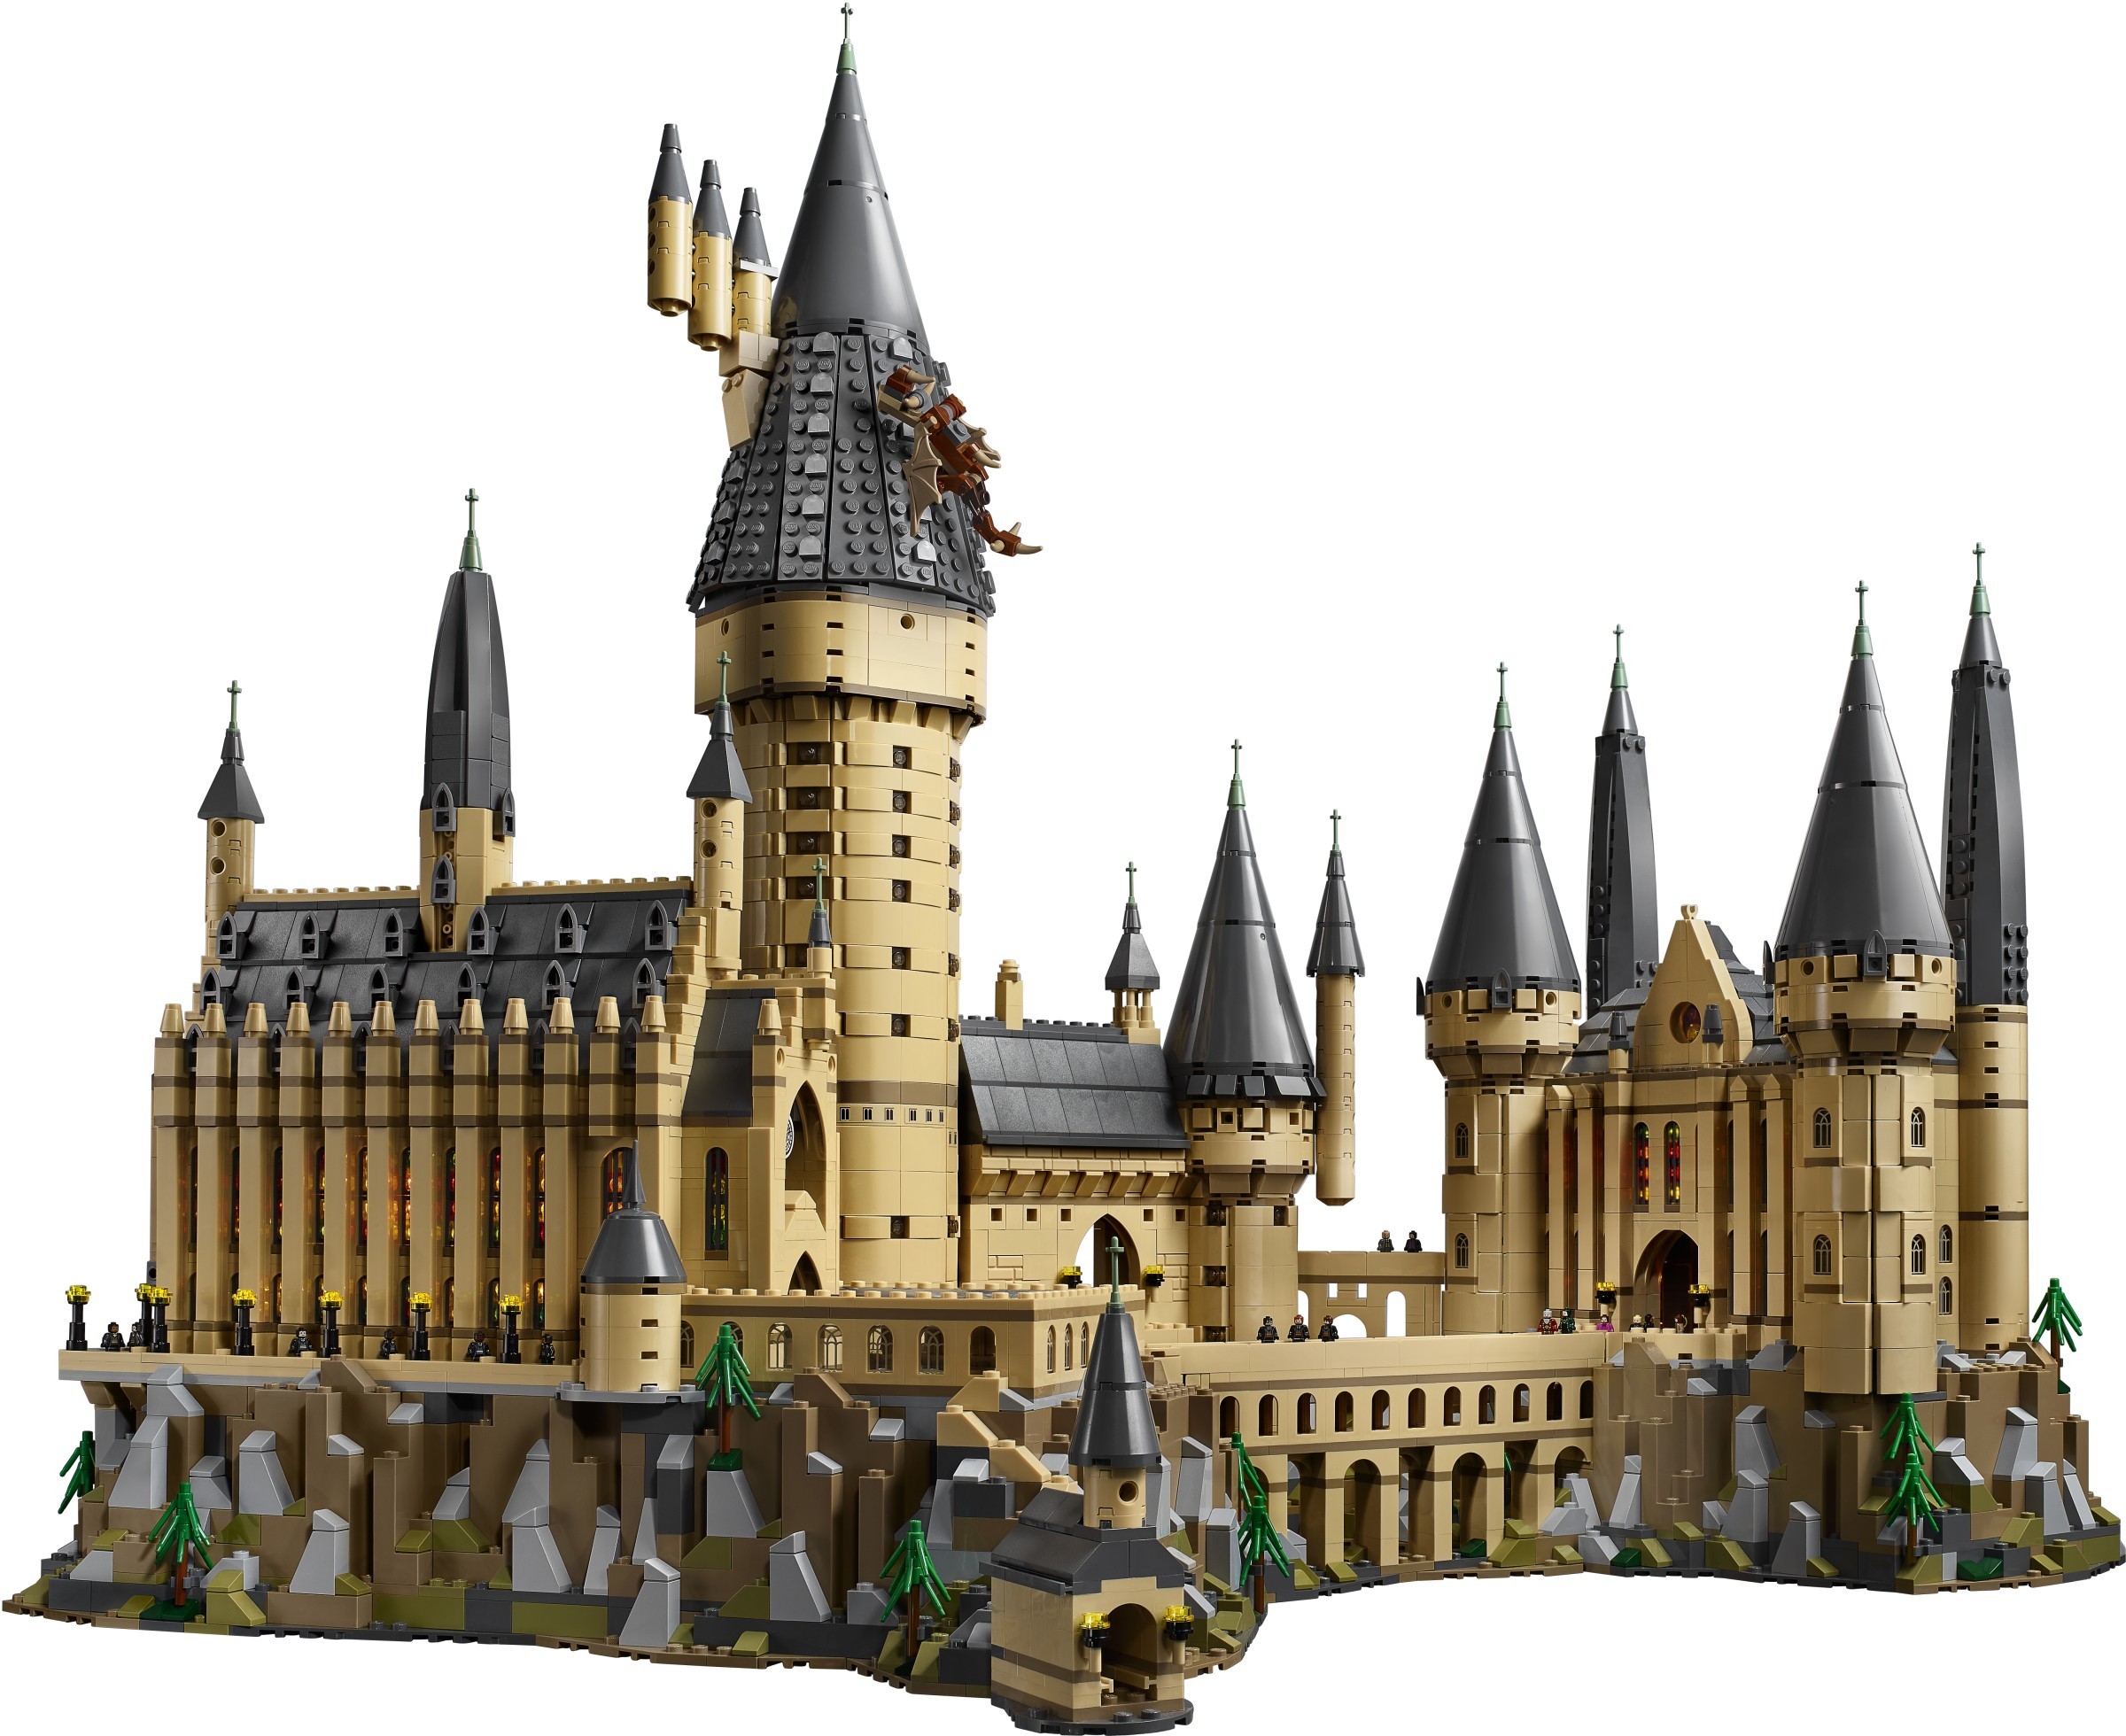 LEGO Harry Potter Château de Poudlard 71043